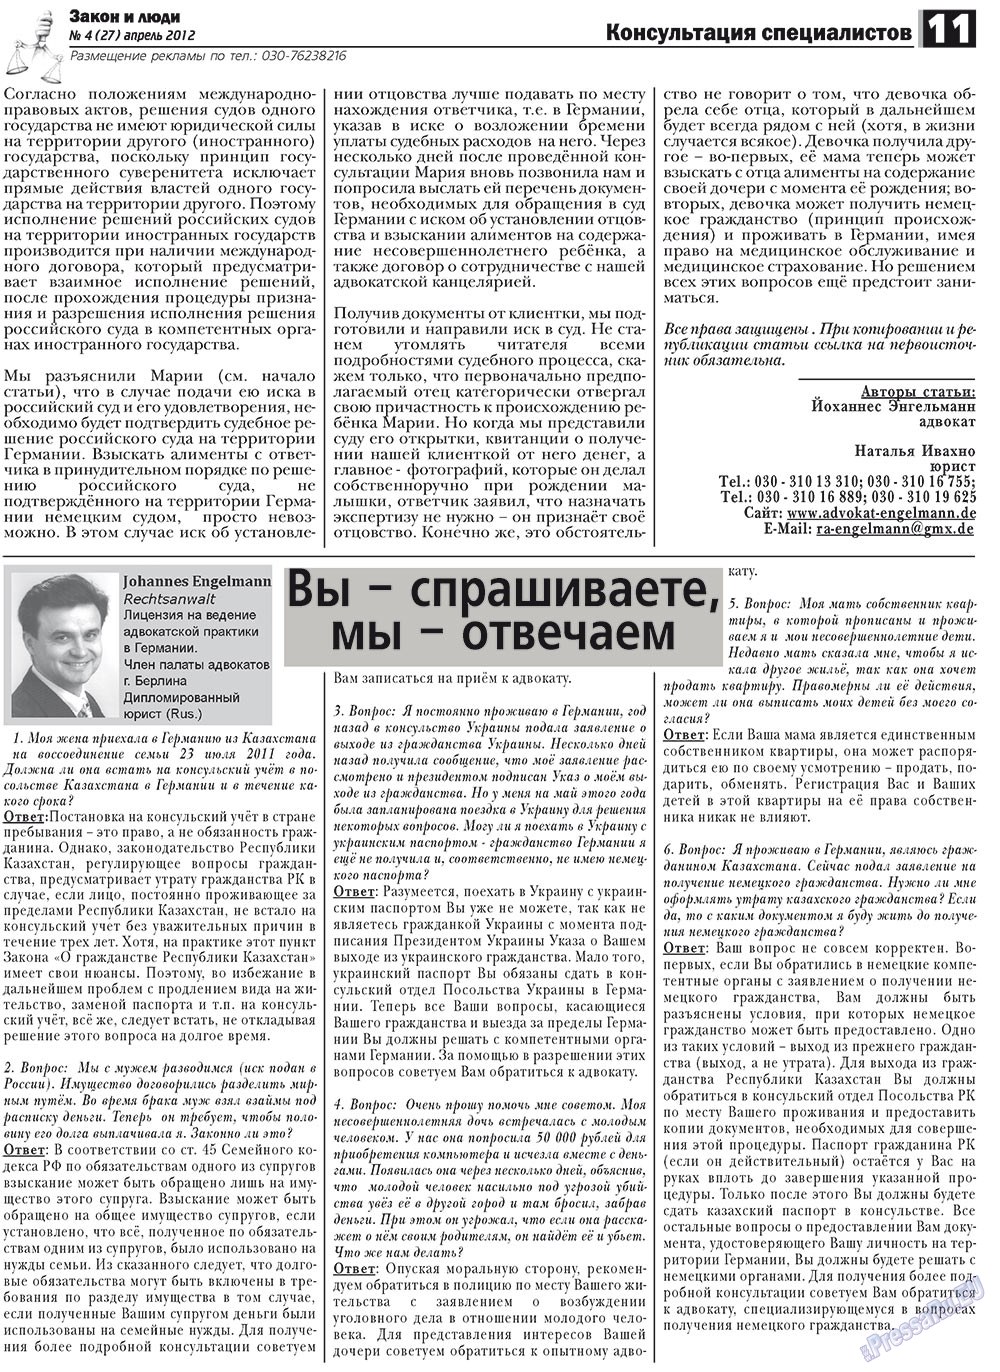 Закон и люди, газета. 2012 №4 стр.11